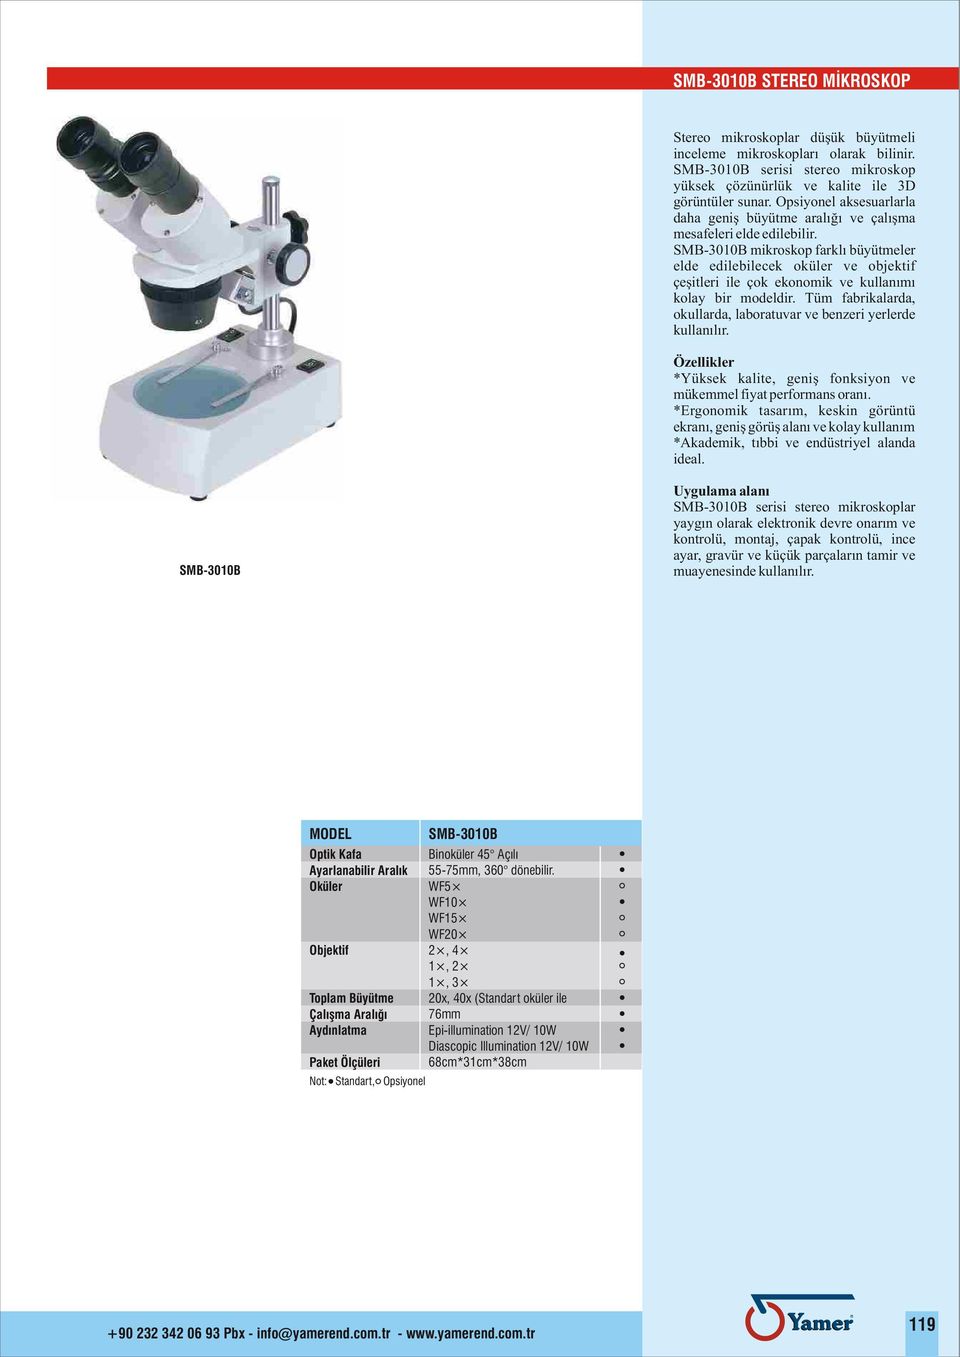 SMB-3010B mikroskop farklý büyütmeler elde edilebilecek oküler ve objektif çeþitleri ile çok ekonomik ve kullanýmý kolay bir modeldir.